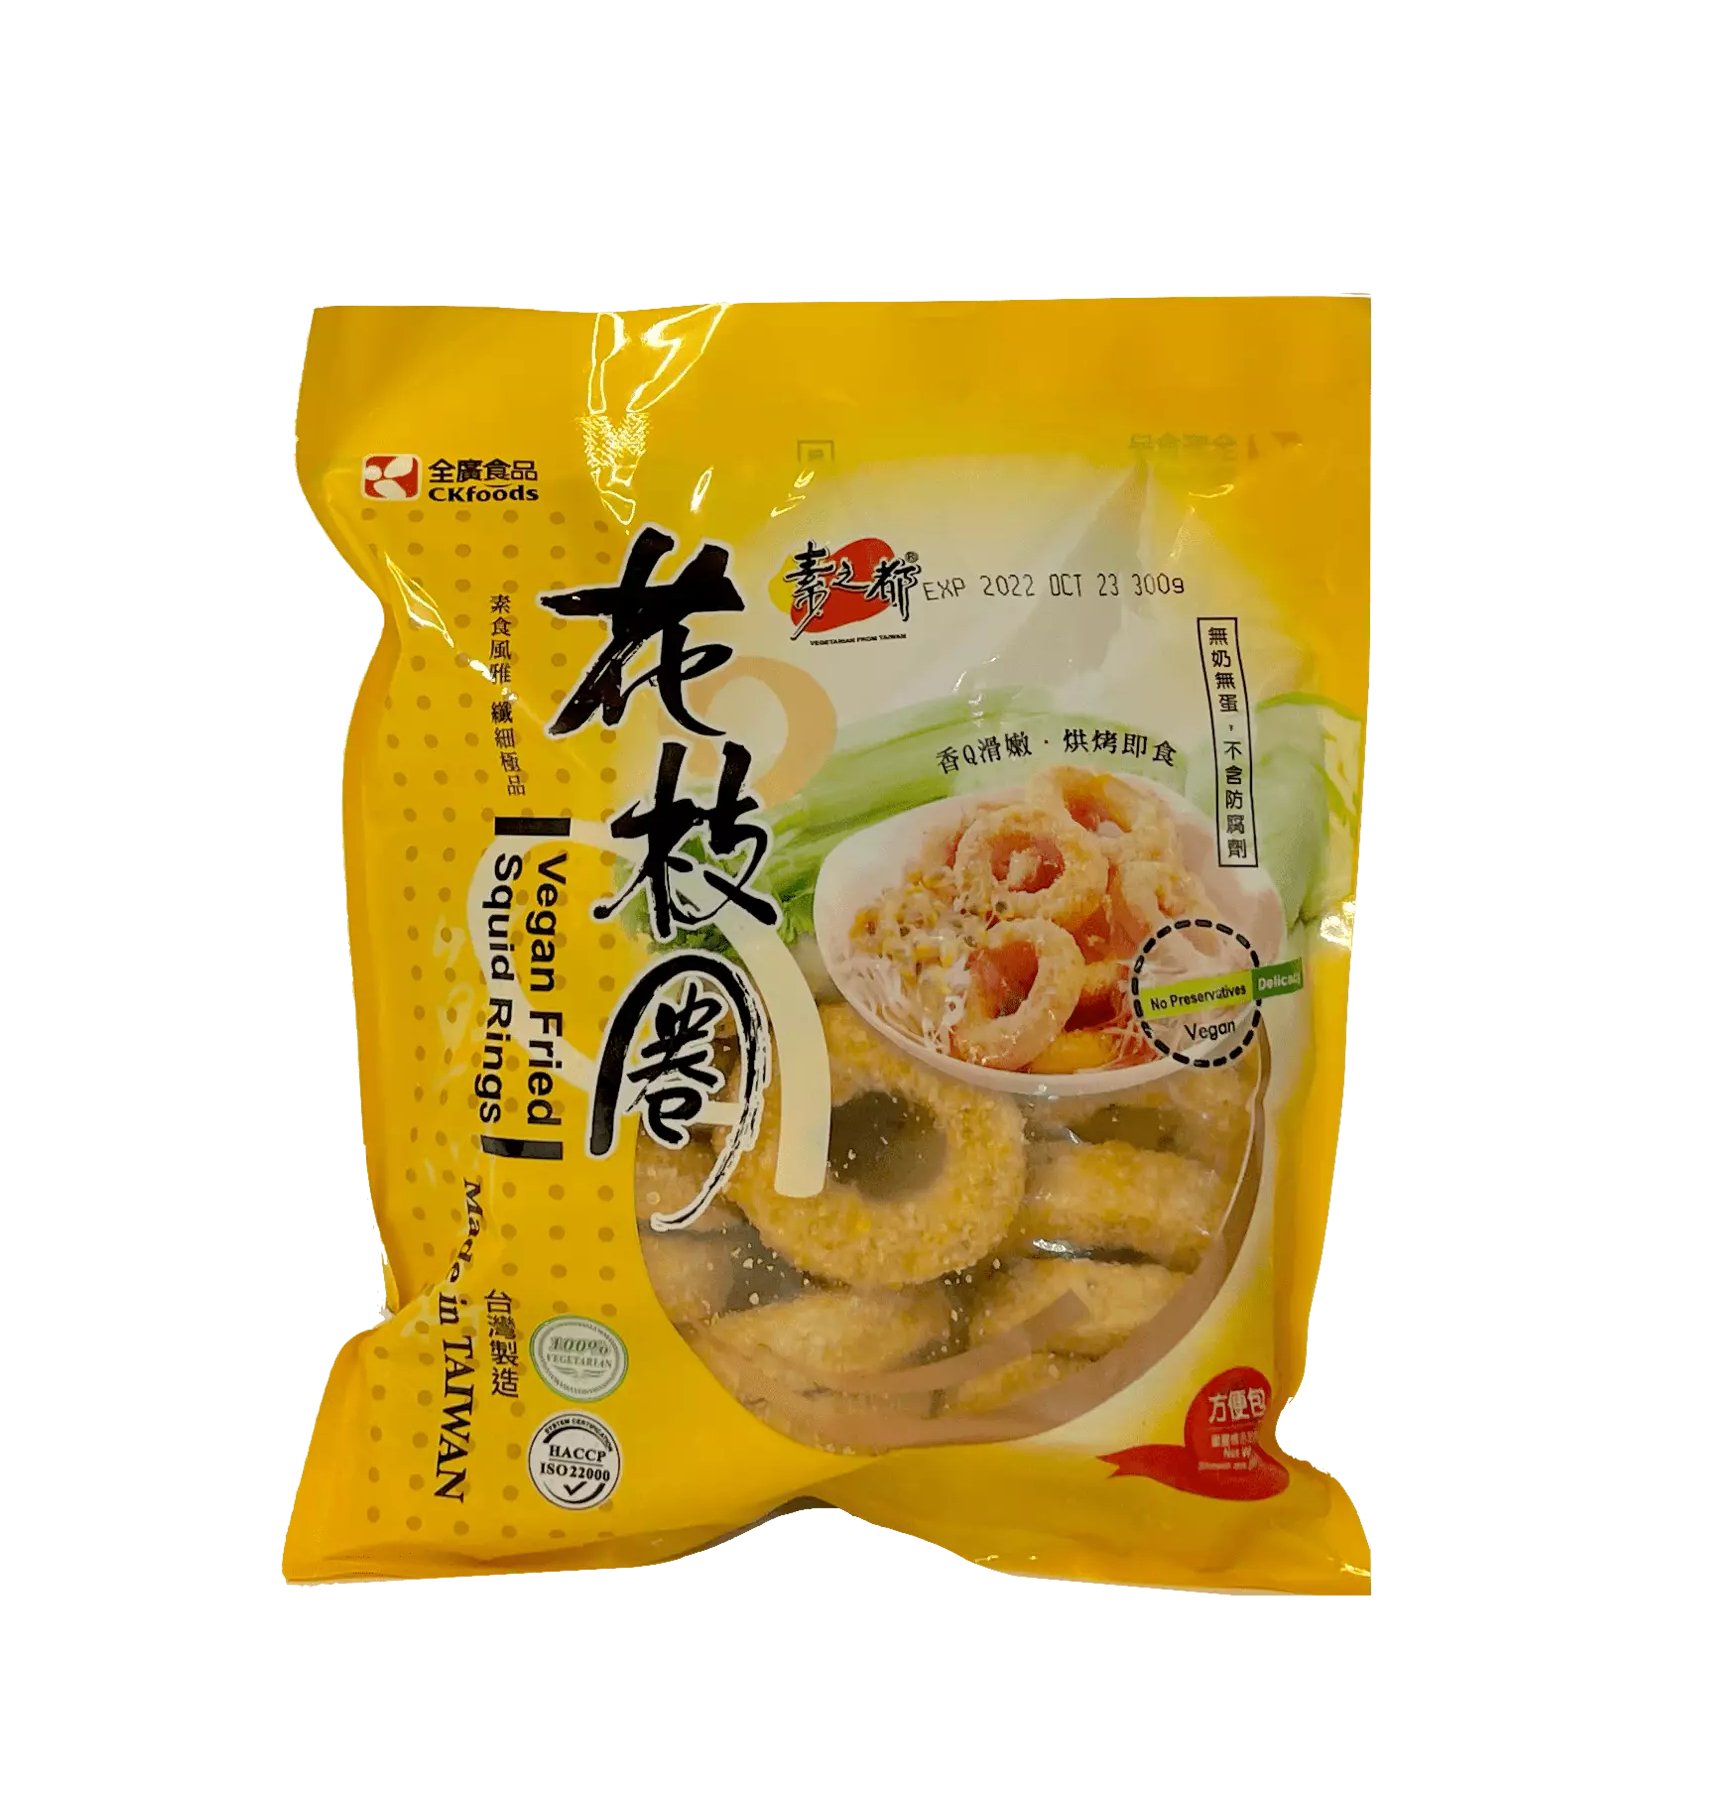 保质期:2022.10.23 素花枝圈 冷冻 300g 全广食品 CK Food 台湾